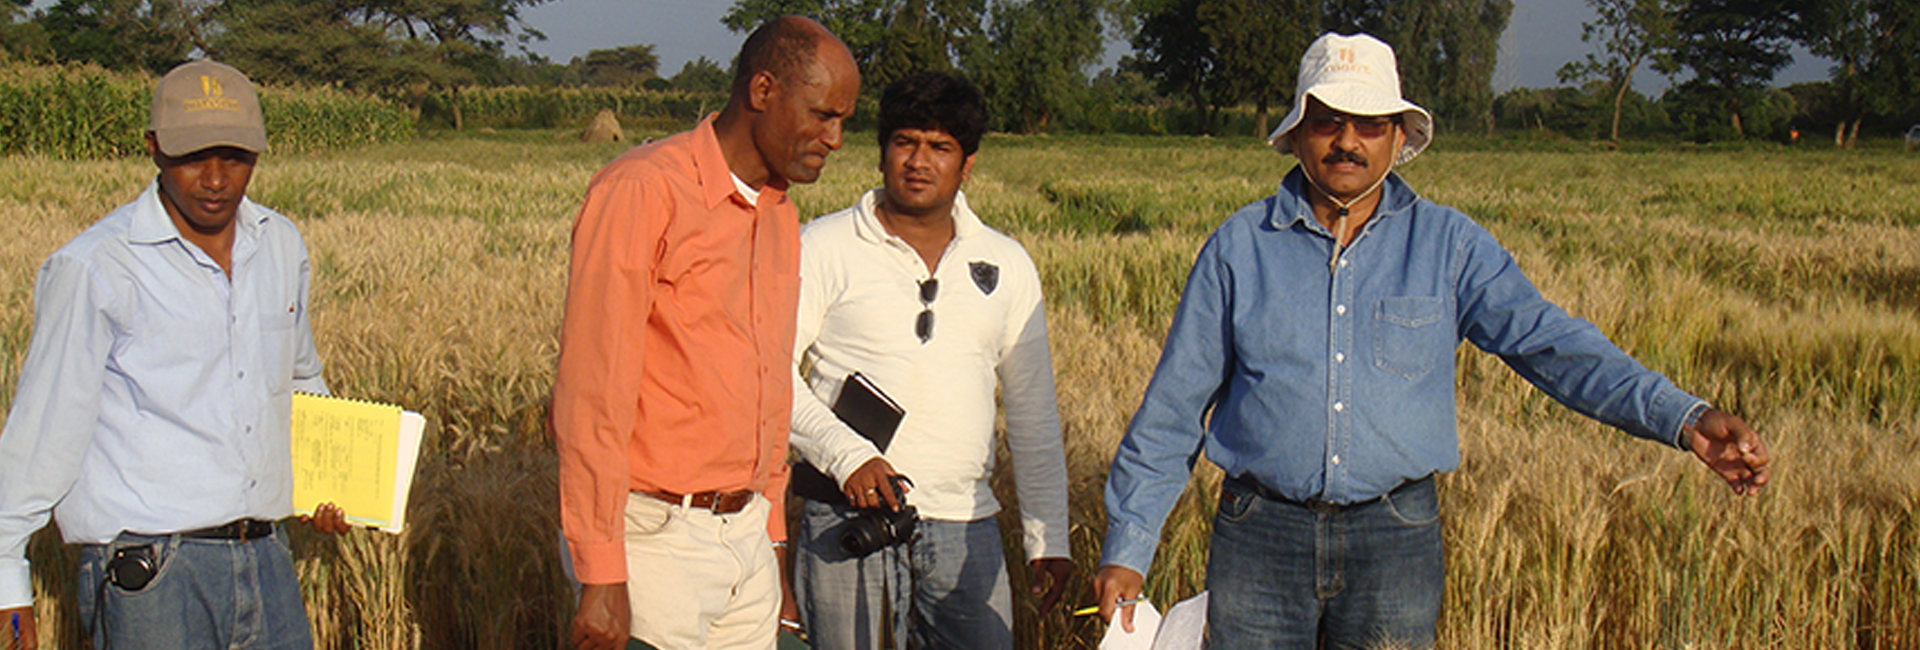 Vencedor do Pravasi Bharatiya Samman, o cientista Dr. Ravi Singh está trabalhando para garantir a segurança alimentar para todos